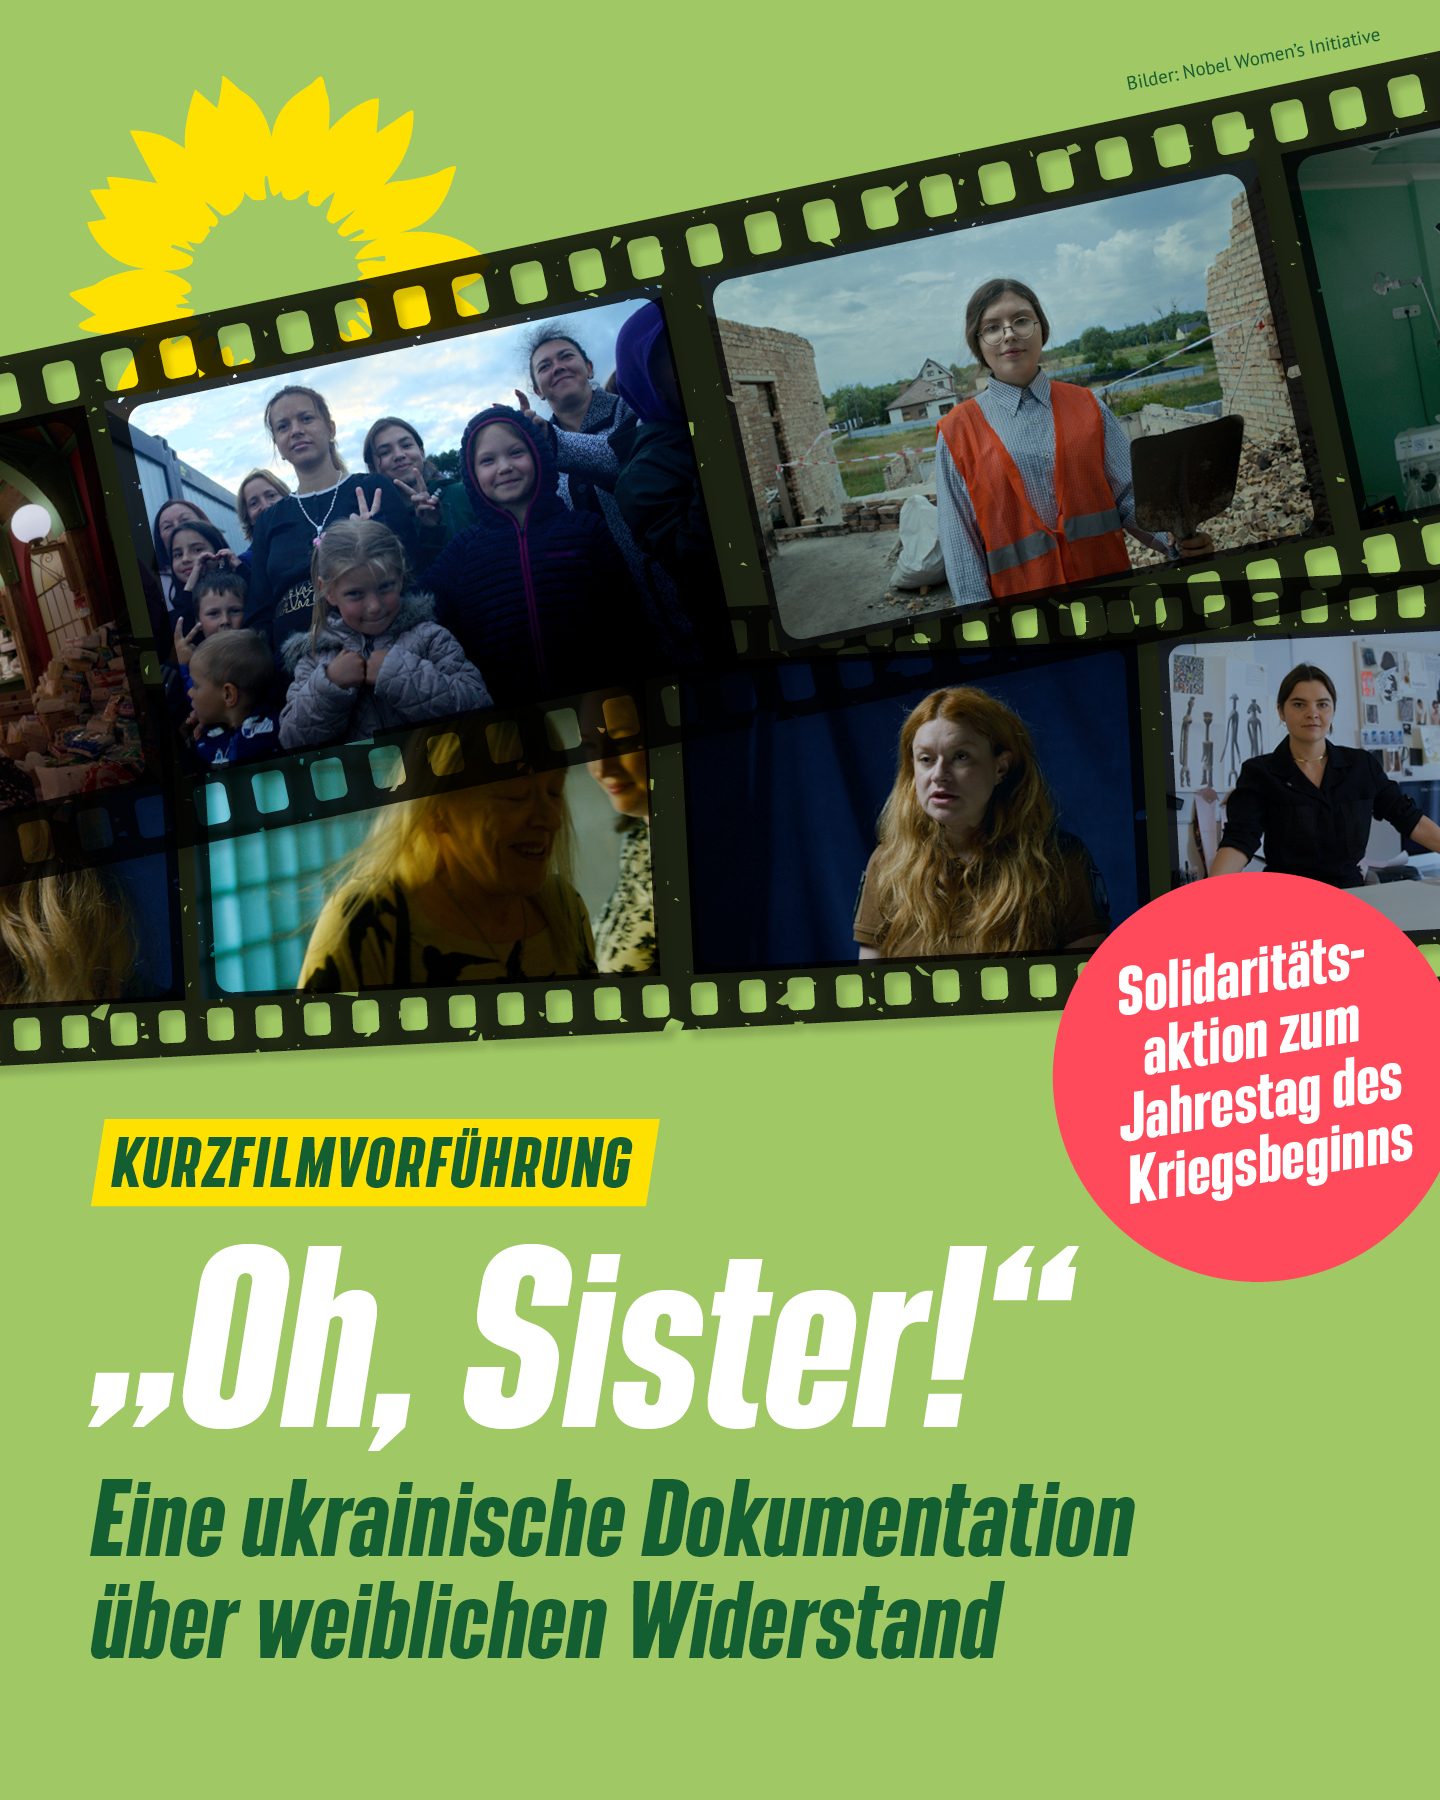 Das Bild zeigt Fotos vom Film und gibt Hinweise zum Abend: Kurzfilmvorführung von "Oh Sister", Eine ukrainische Dokumentation über weiblichen Widerstand